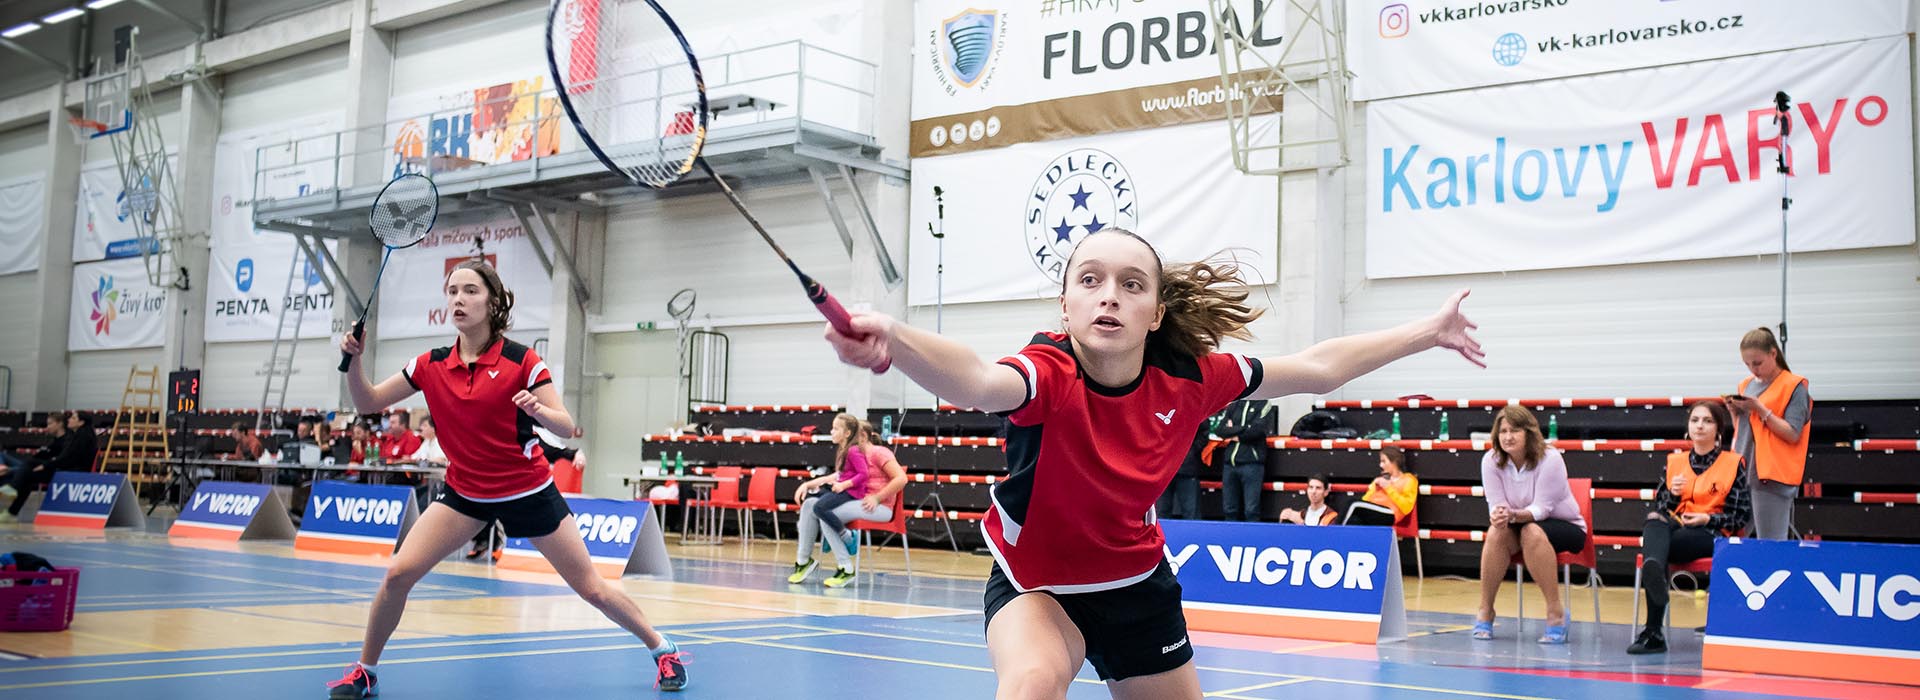 Badminton Karlovy Vary